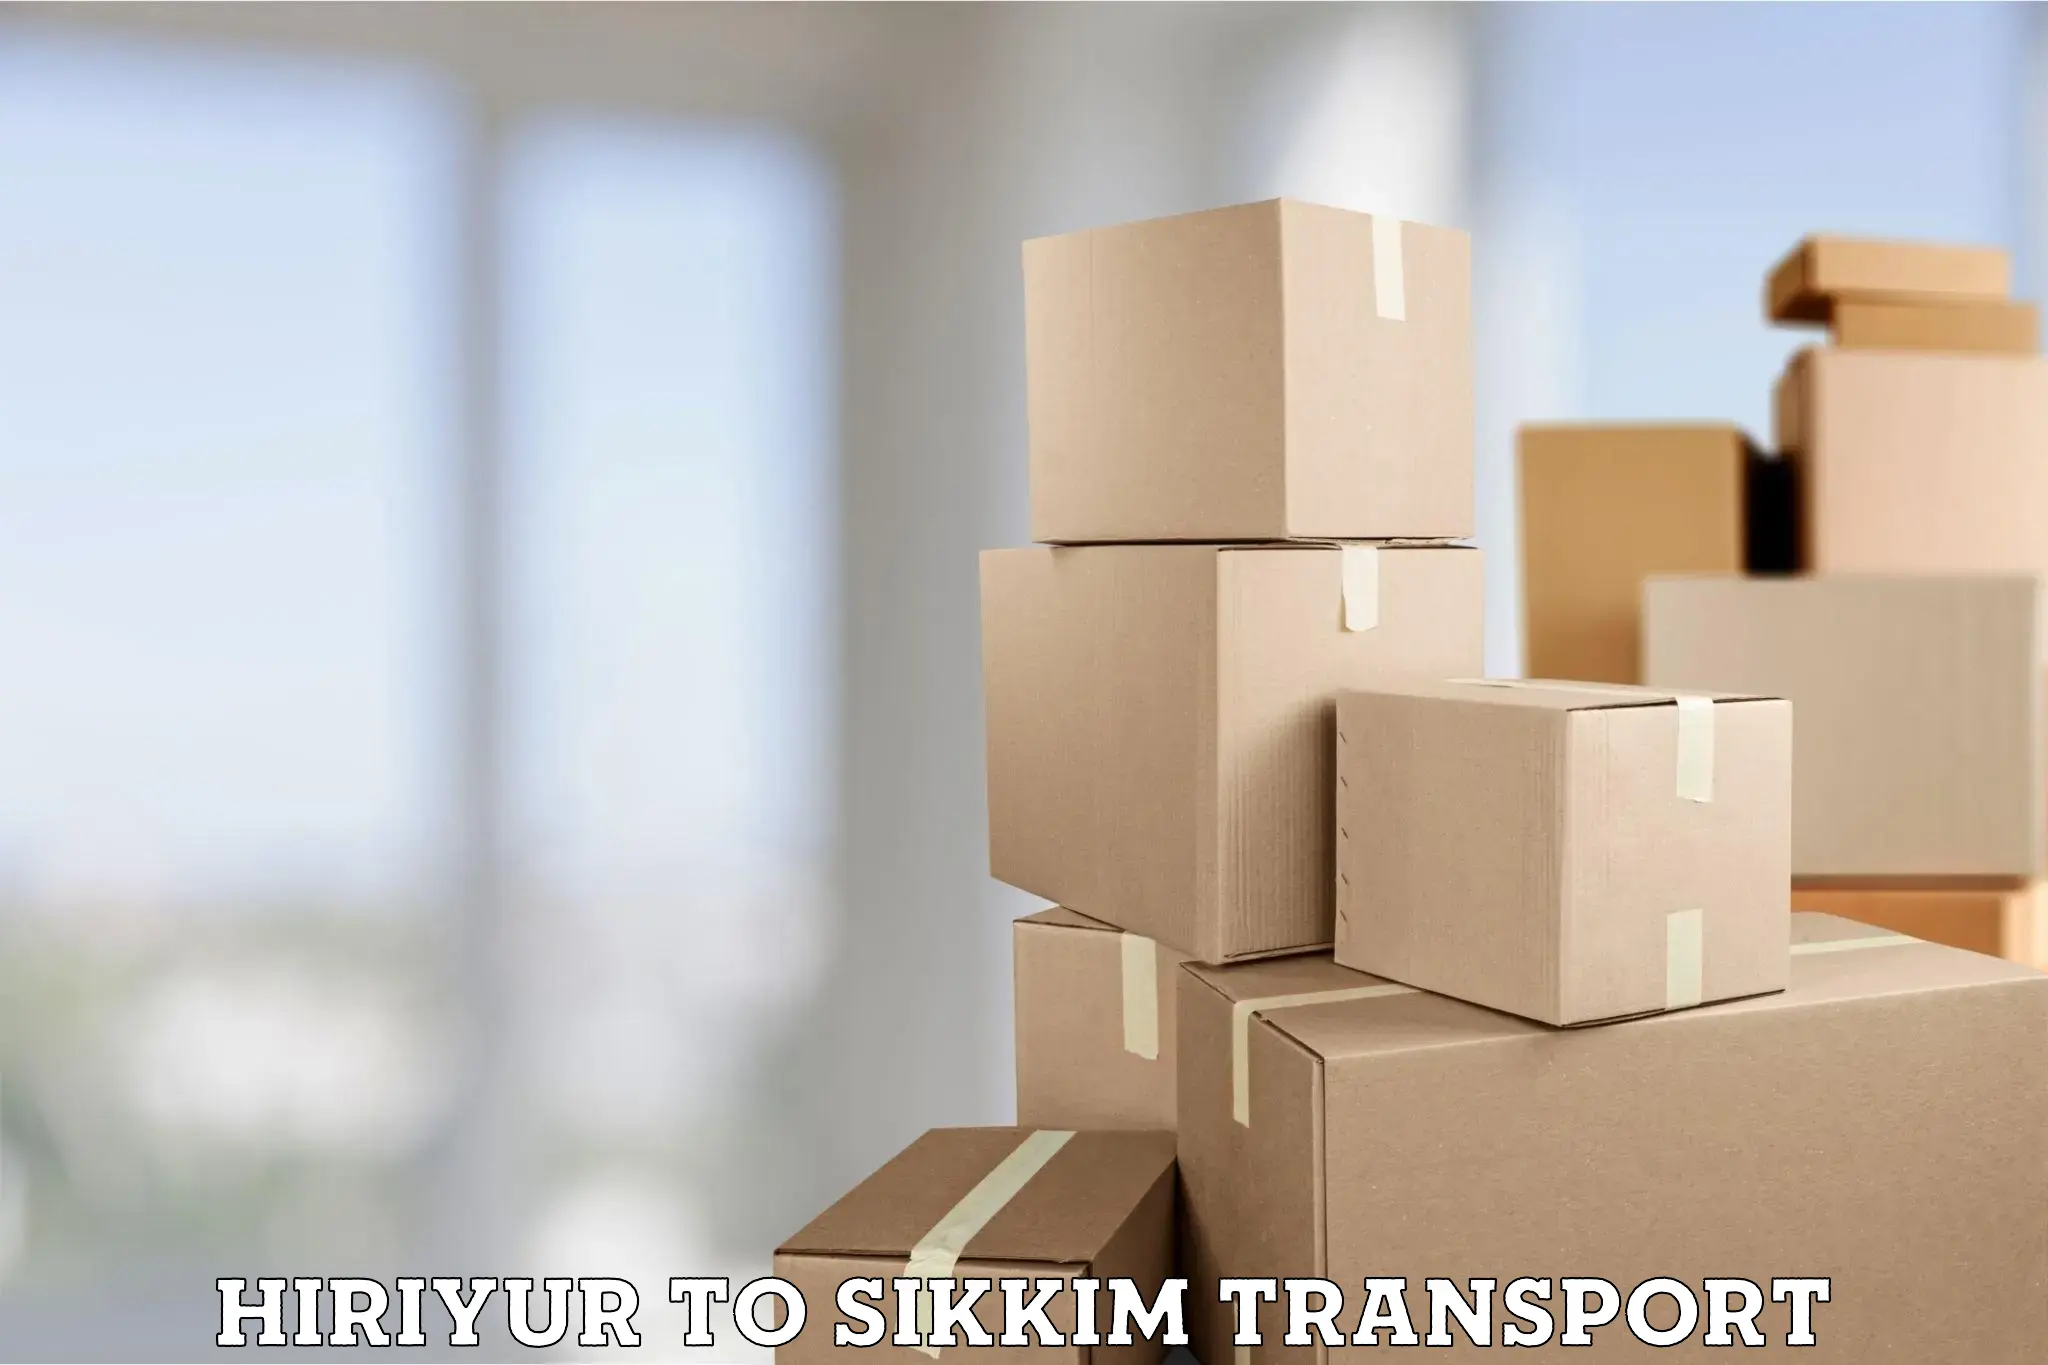 Transport in sharing Hiriyur to Rangpo